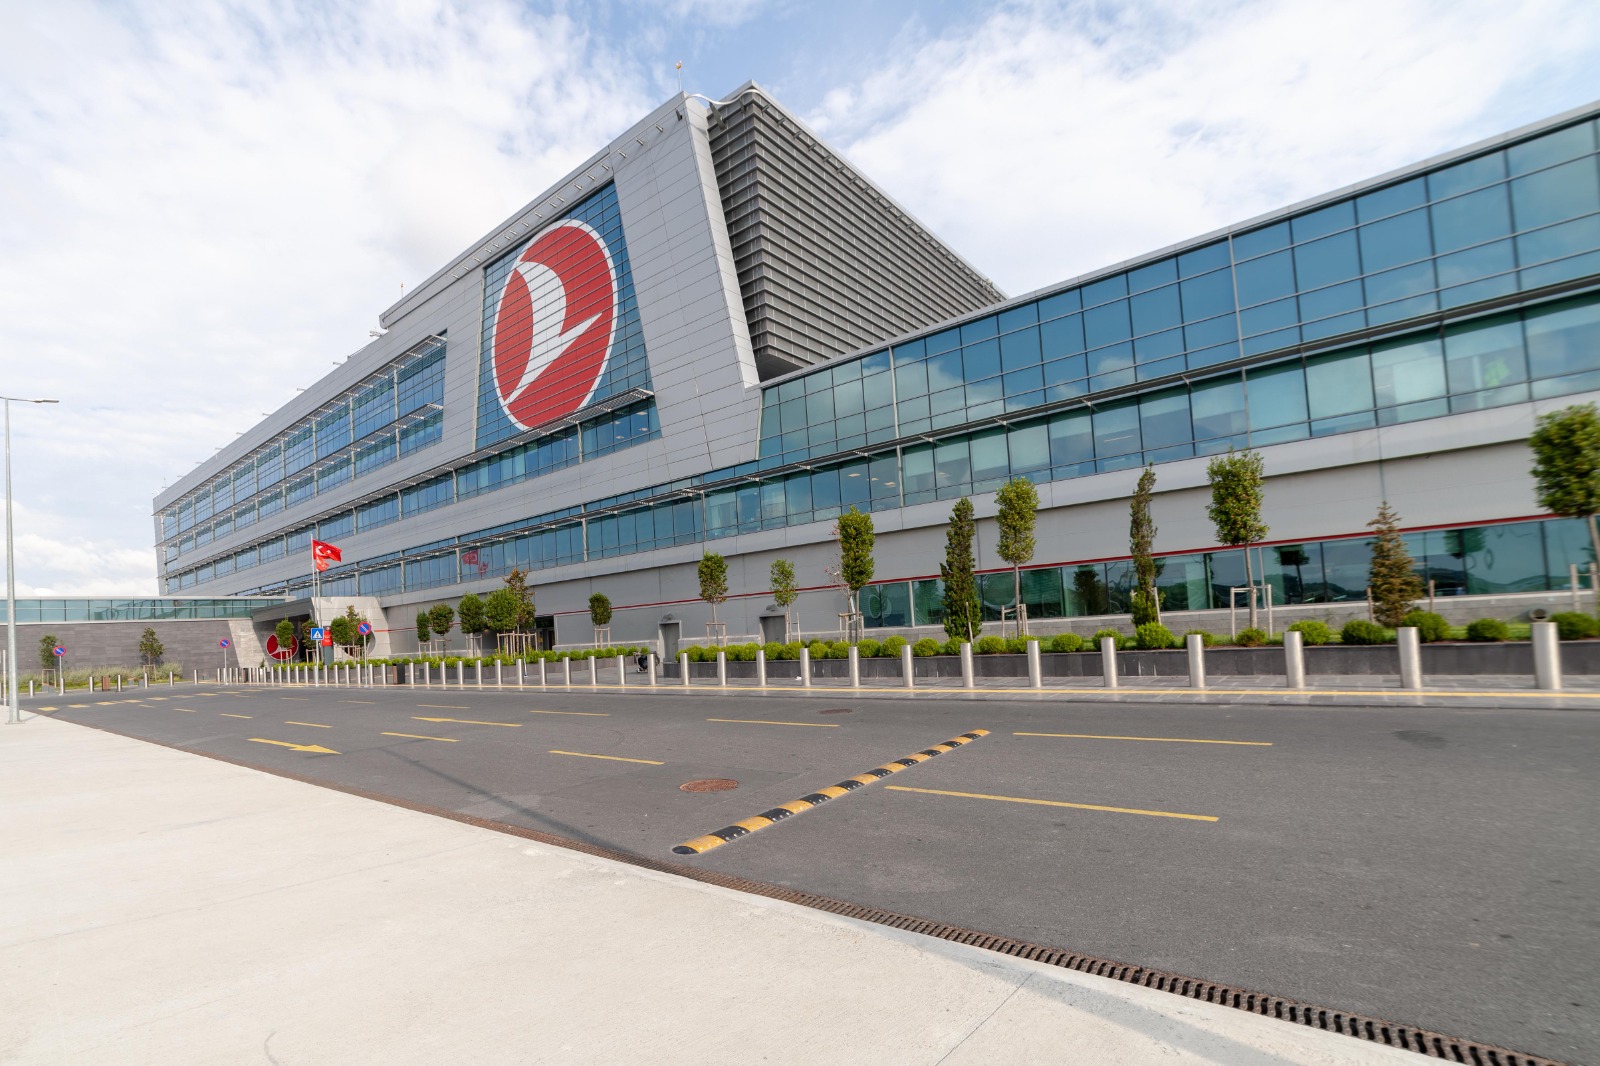 Türk Hava Yolları İstanbul Havalimanı’ndaki Operasyon Merkezi (OC) ve Ekip Terminali Binası ile Leed v4.1 İşletme Sertifikası Aldı.